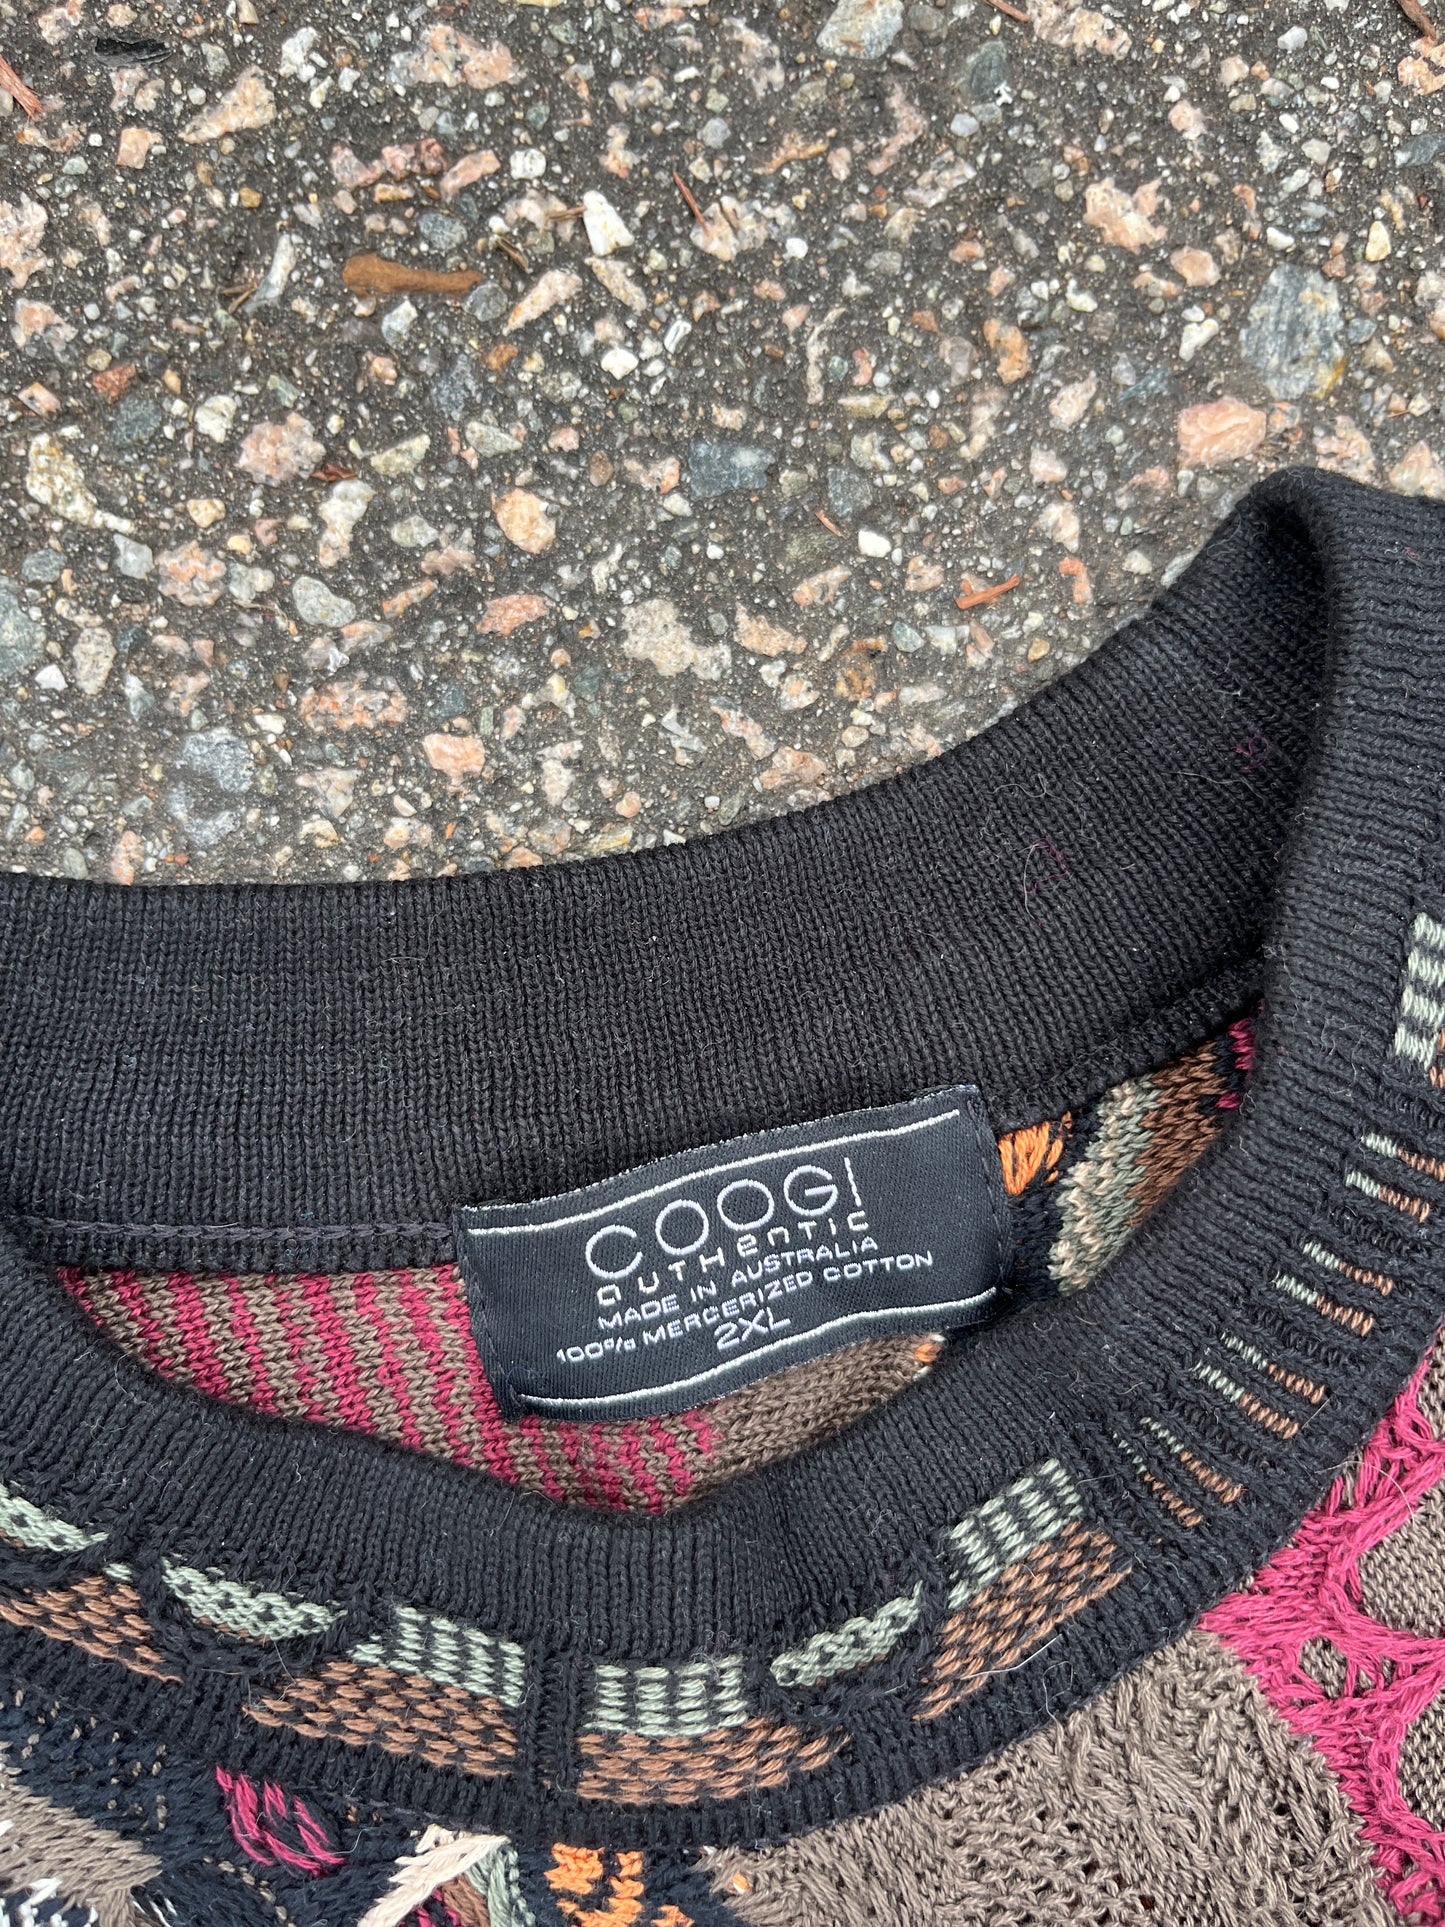 Vintage Coogi 3D Knit Cotton Sweater - Fits XL-2XL